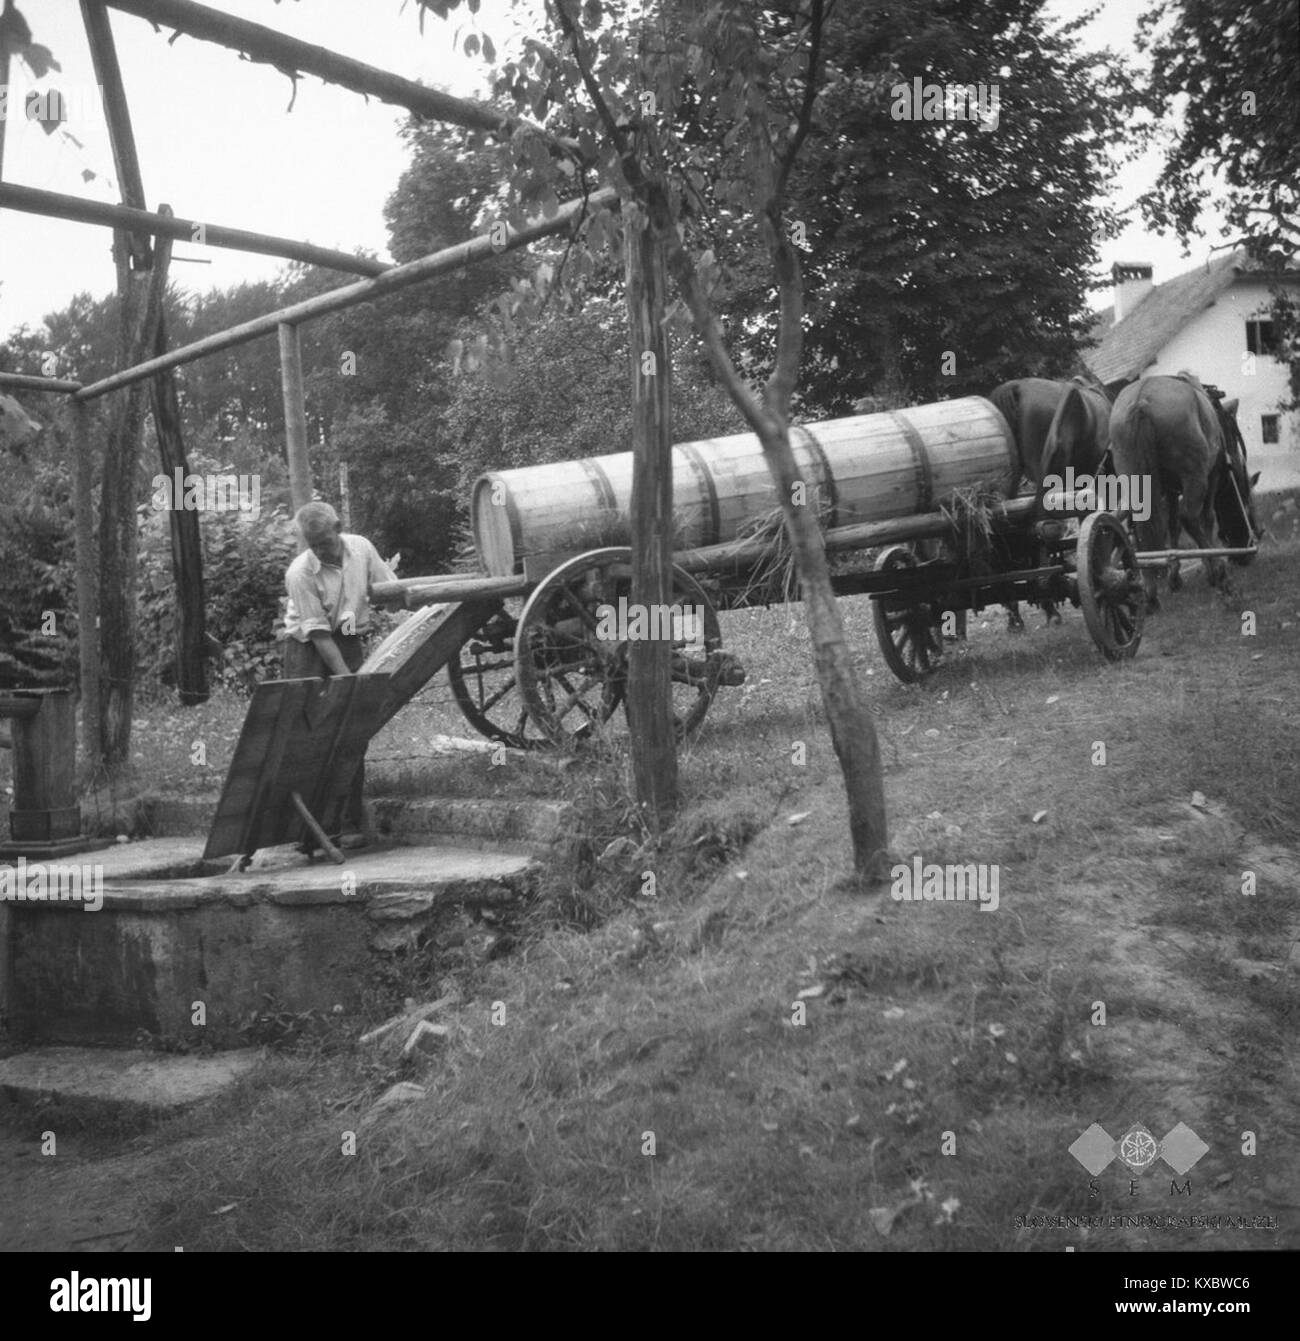 Spuščanje vode iz 'lajte' v šterno (suša), Huda Polica, pri Kurjek 1949 (2) Stock Photo